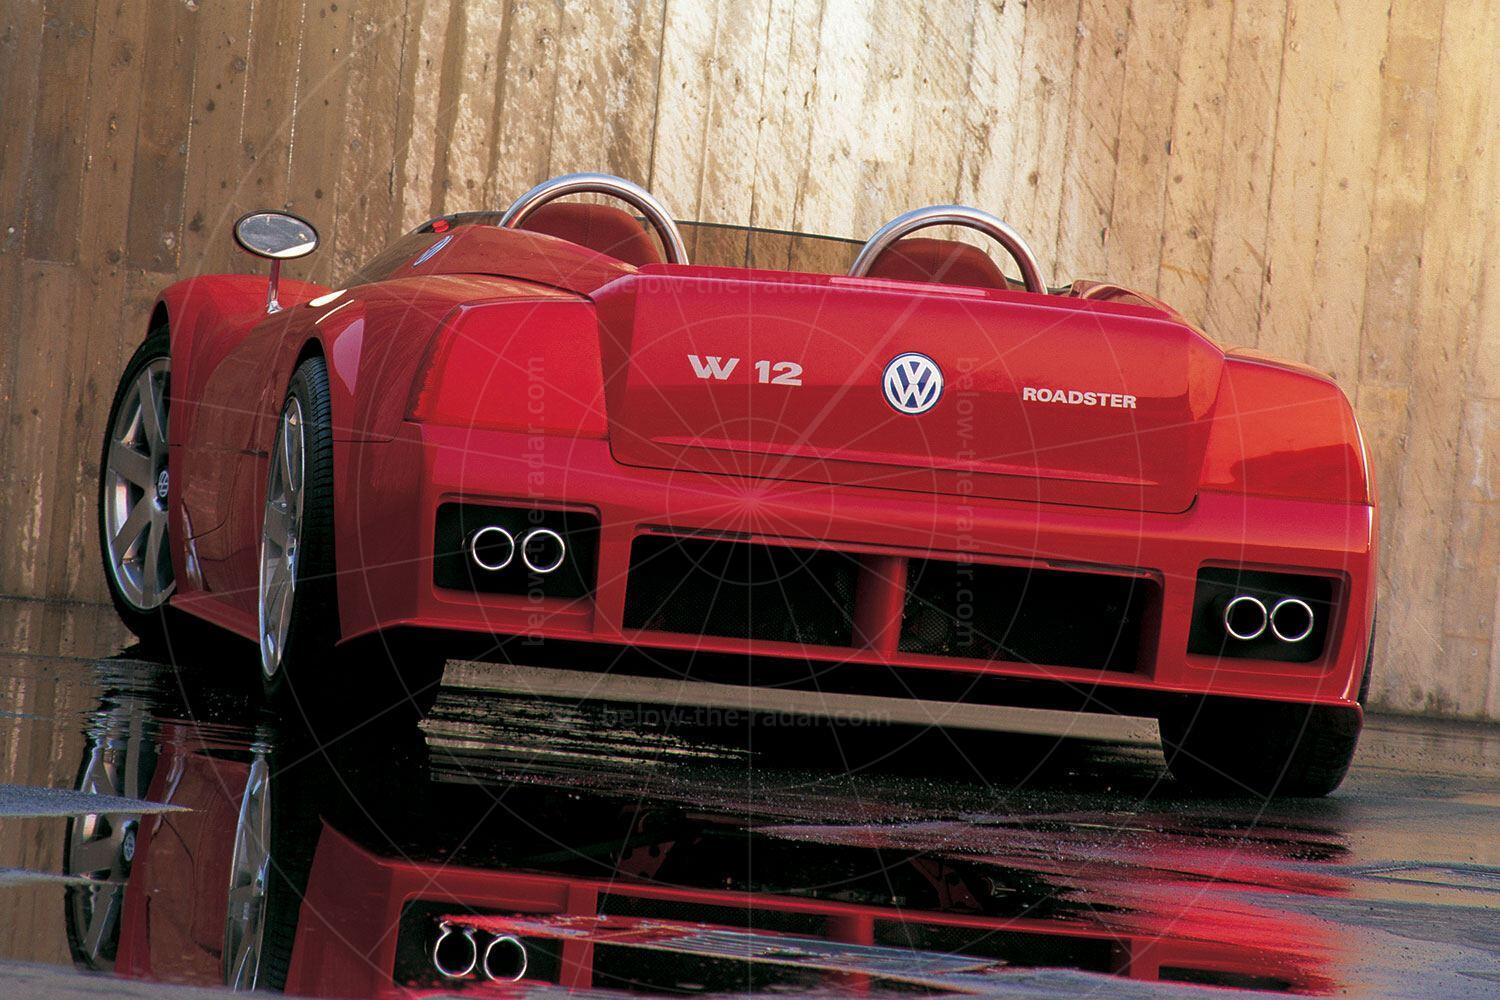 1998 Volkswagen W12 roadster Pic: Volkswagen | 1998 Volkswagen W12 roadster